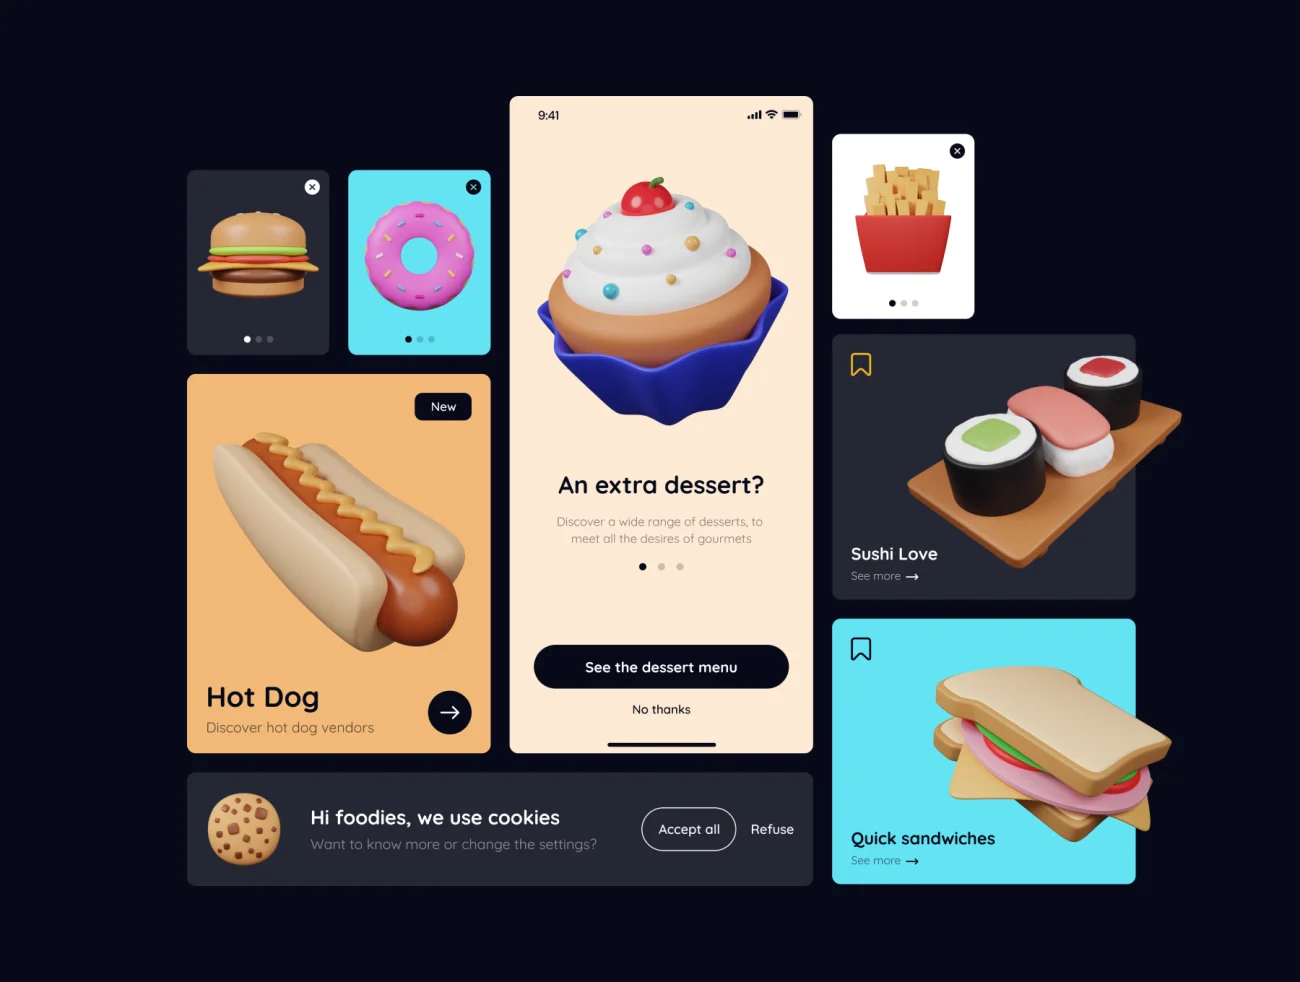 40款垃圾食品快餐汉堡薯条冰激凌3D图标素材包 Junk Food Pack - Customizable 3D Icons-3D/图标-到位啦UI